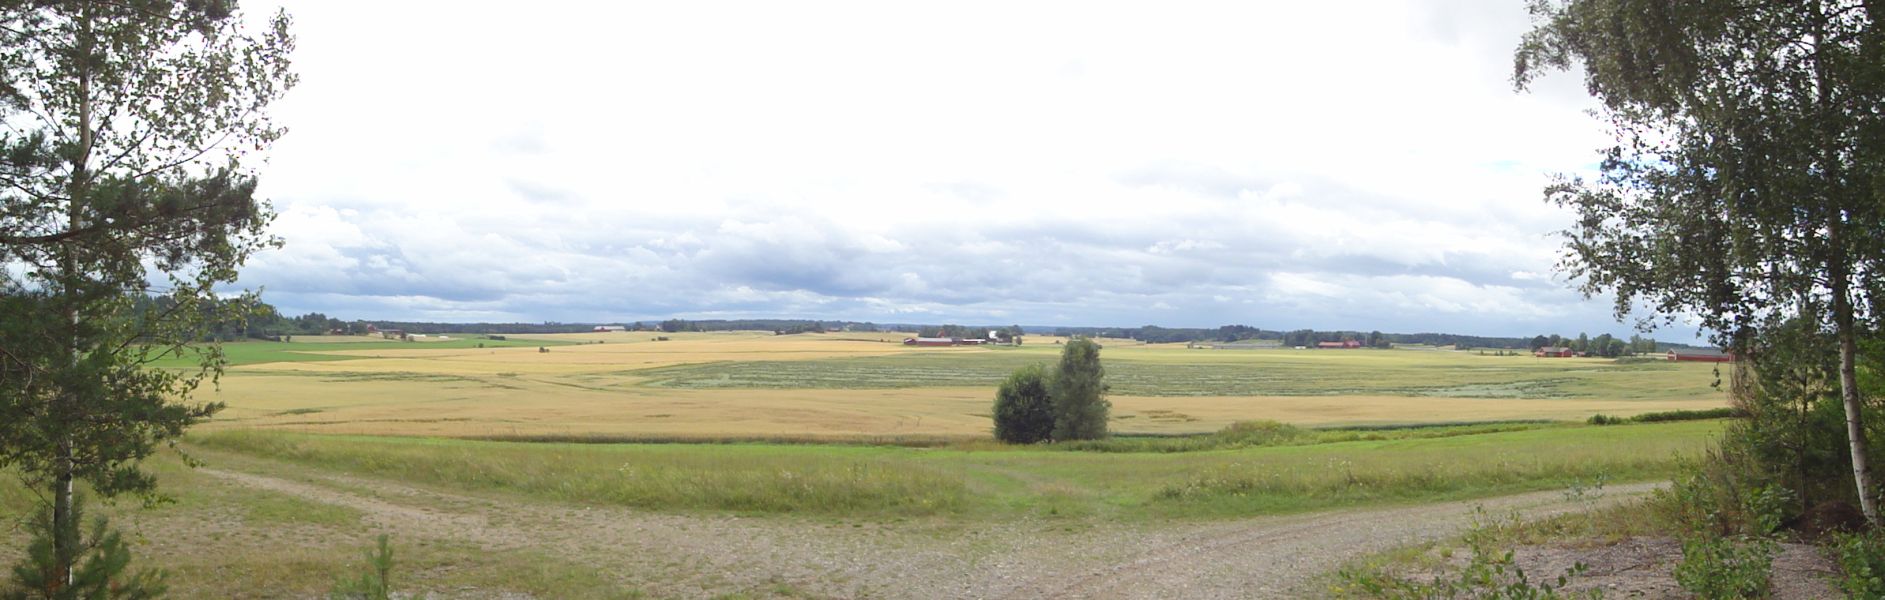 landskap i Västernärke, Lekebergsåsen